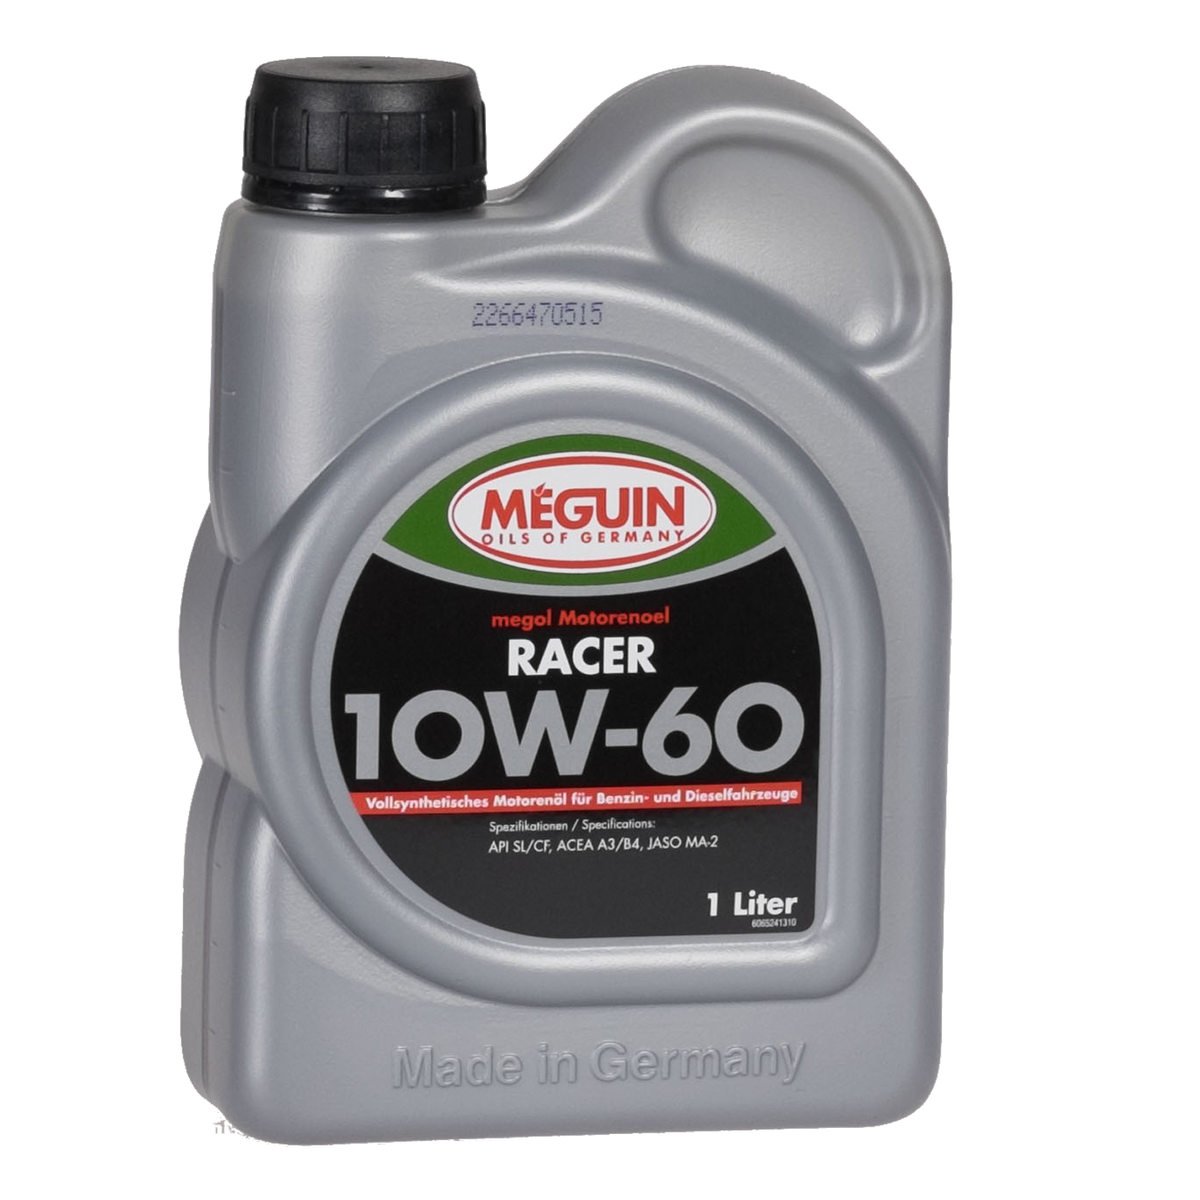 Meguin Racer 10W60 1 Liter von Meguin